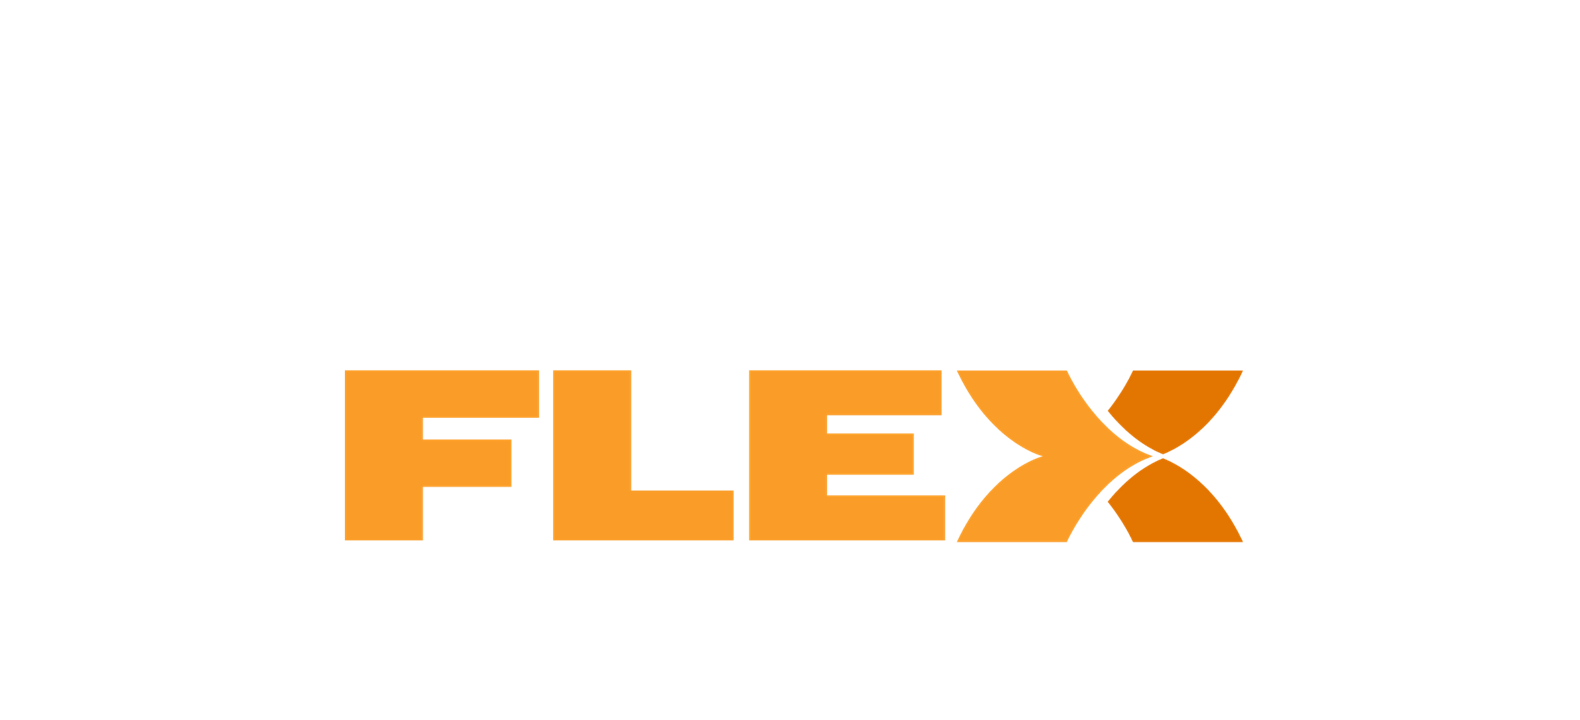 Introducing Metro FLEX